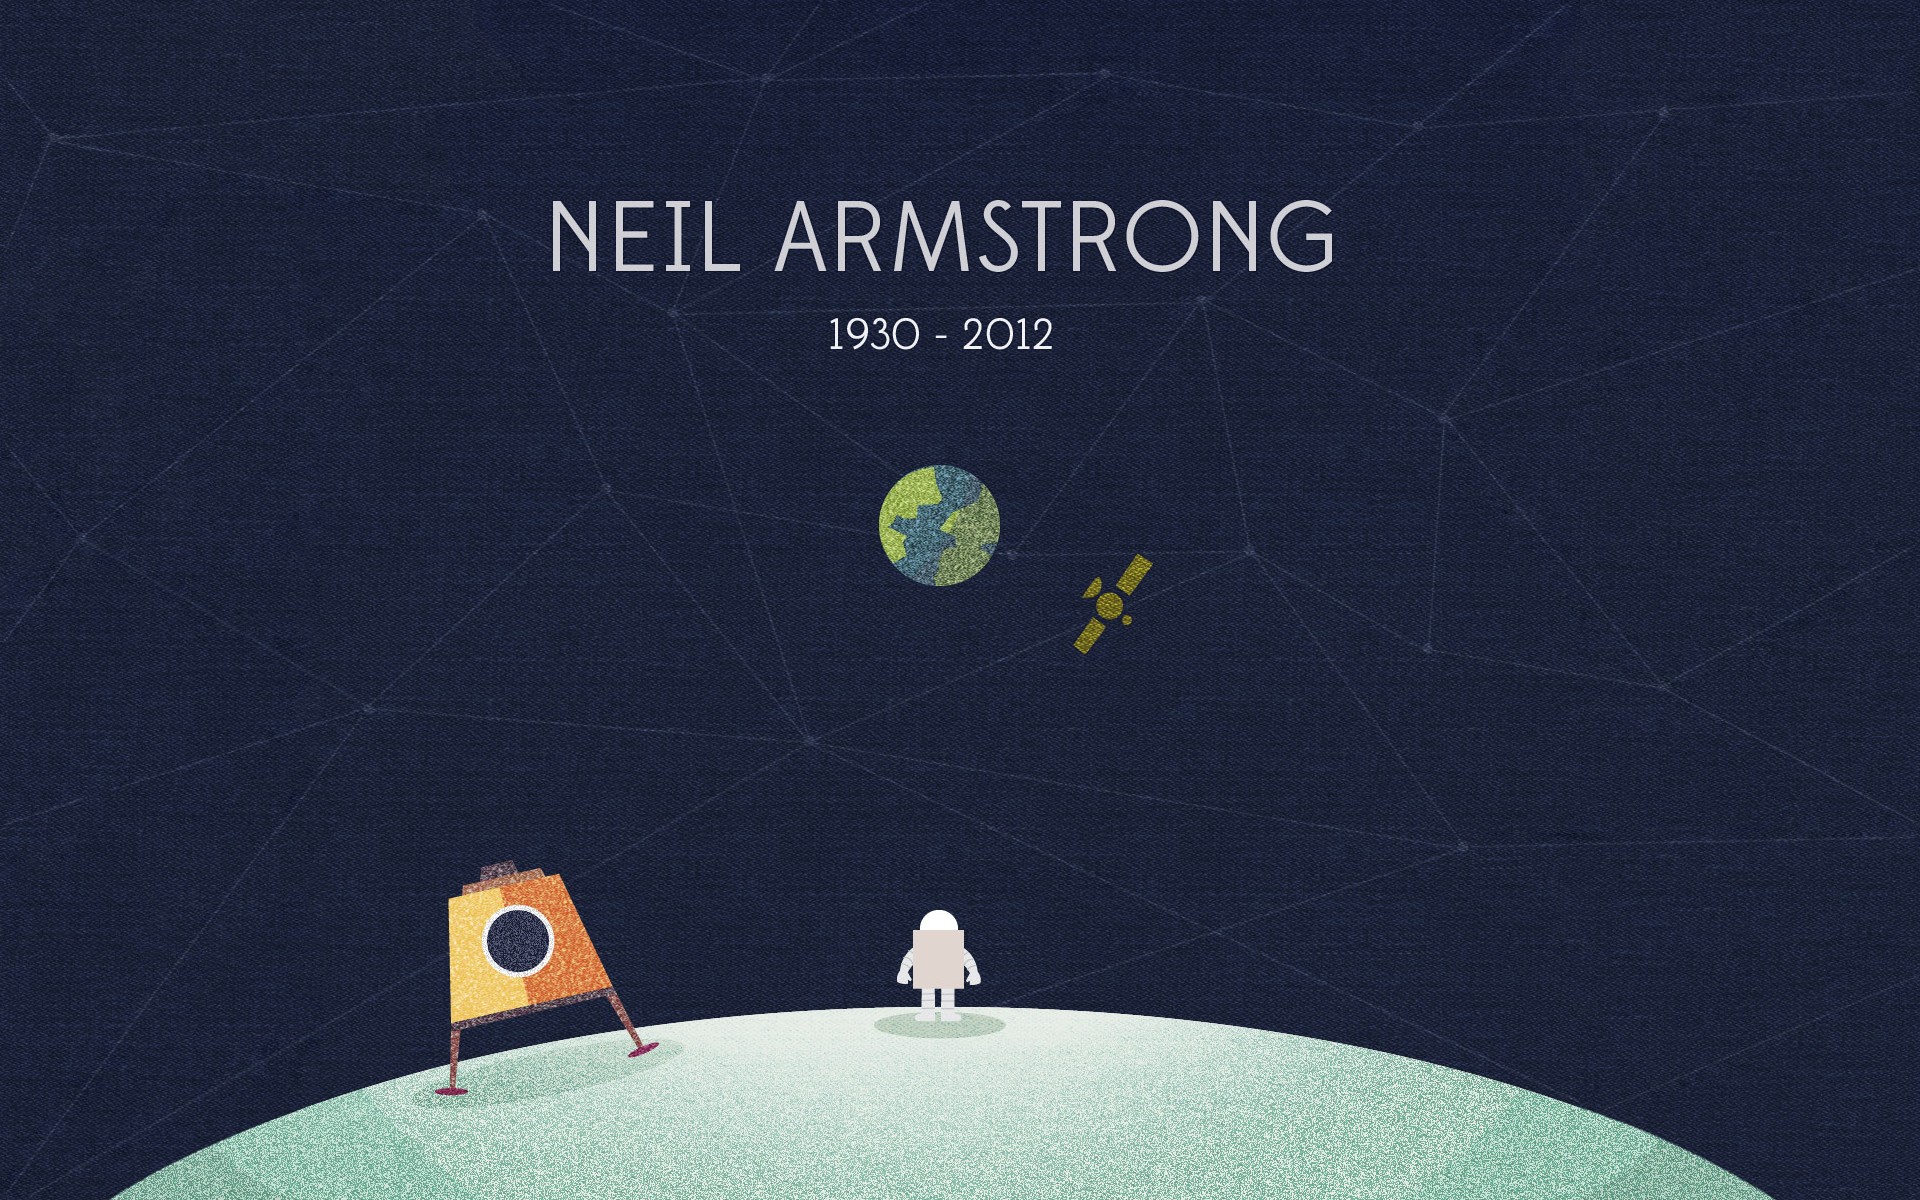 Neil Armstrong Wallpaper